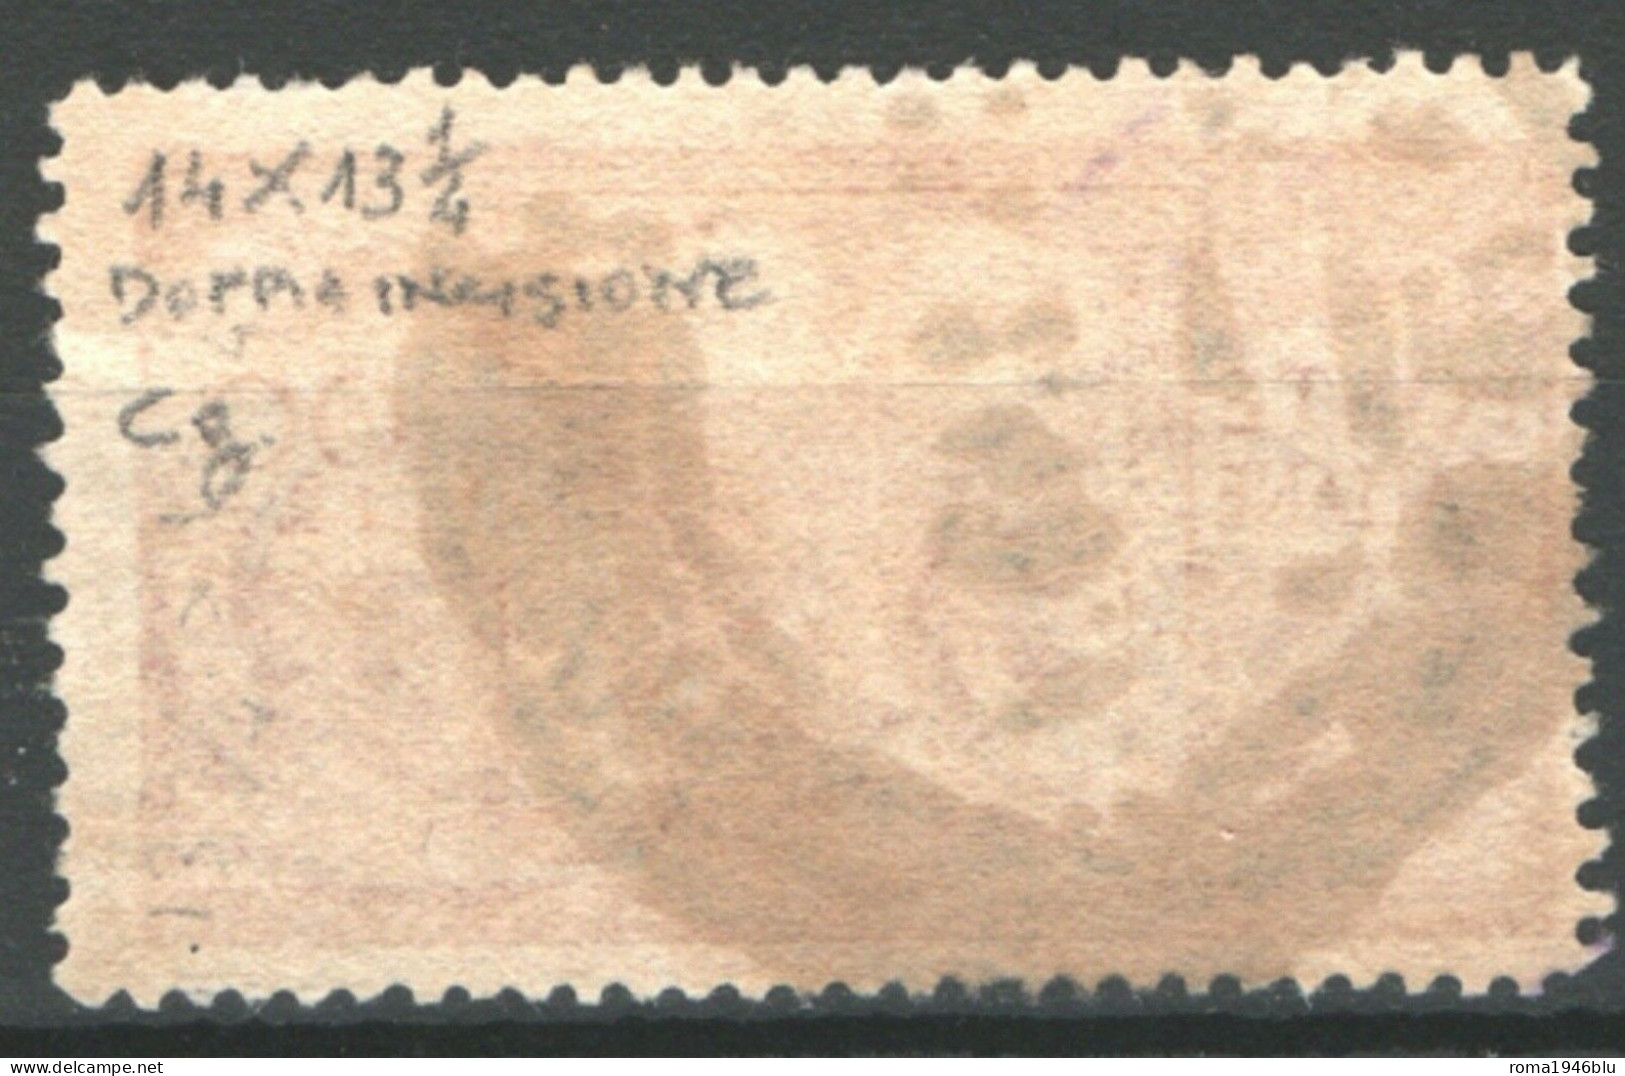 REPUBBLICA 1945 DEMOCRATICA 100 L. DOPPIA INCISIONE SASSONE 565/Ie USATO - Errors And Curiosities